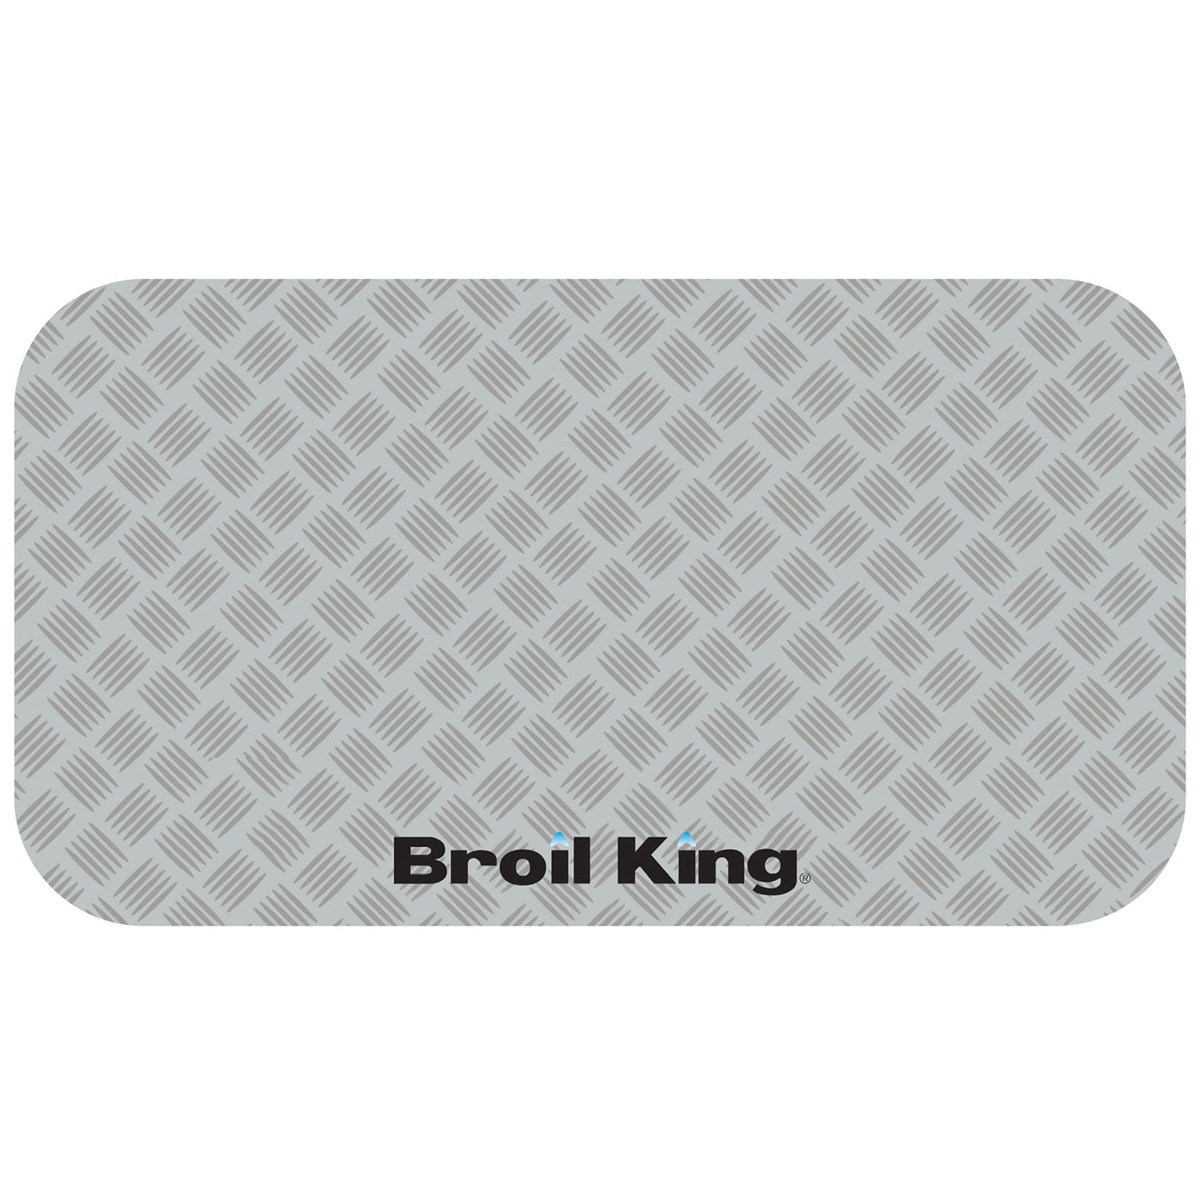 Ασημένιο Προστατευτικό Χαλάκι (180 x 90 cm) – Broil King®